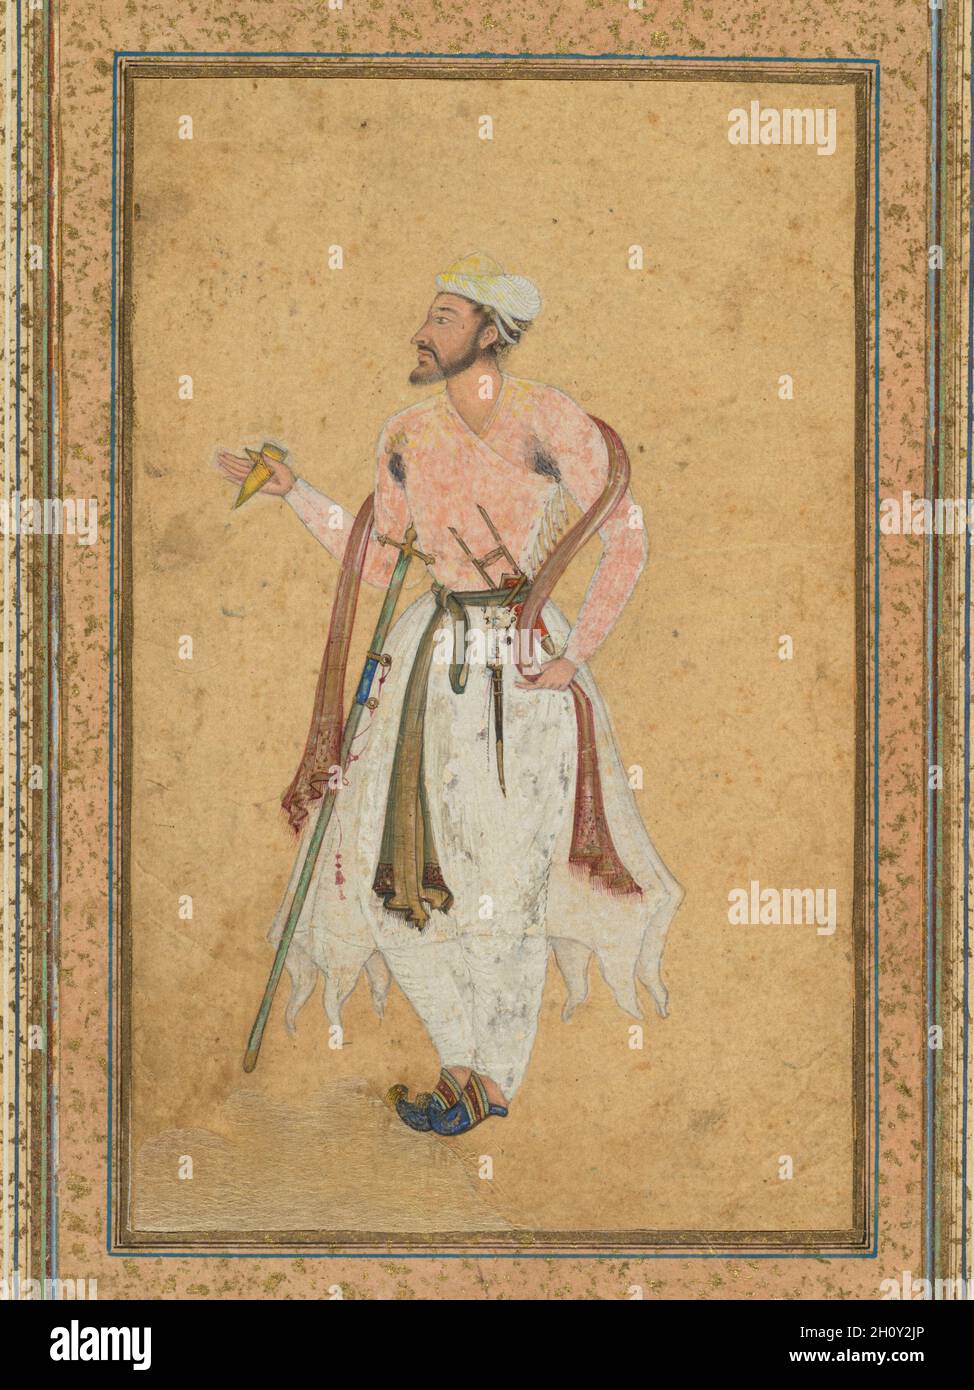 Un cortesano mogol, c. 1575; frontera agregado probablemente 1700. La India Mughal, siglo XVI. Acuarela opaca con oro en papel, montado con oro espolvoreado de fronteras; Foto de stock